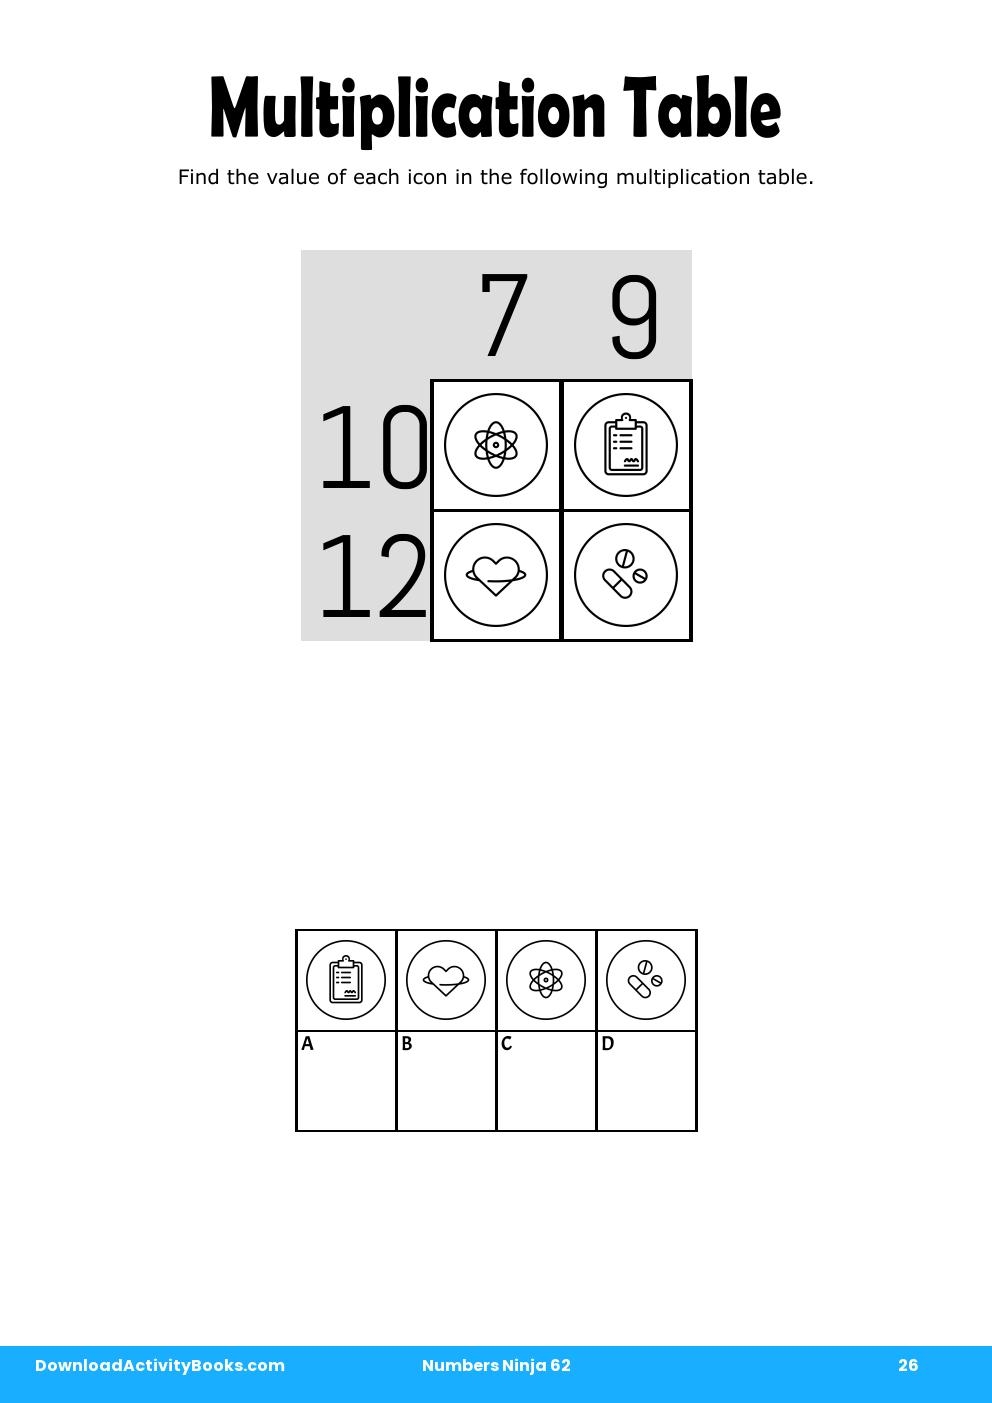 Multiplication Table in Numbers Ninja 62